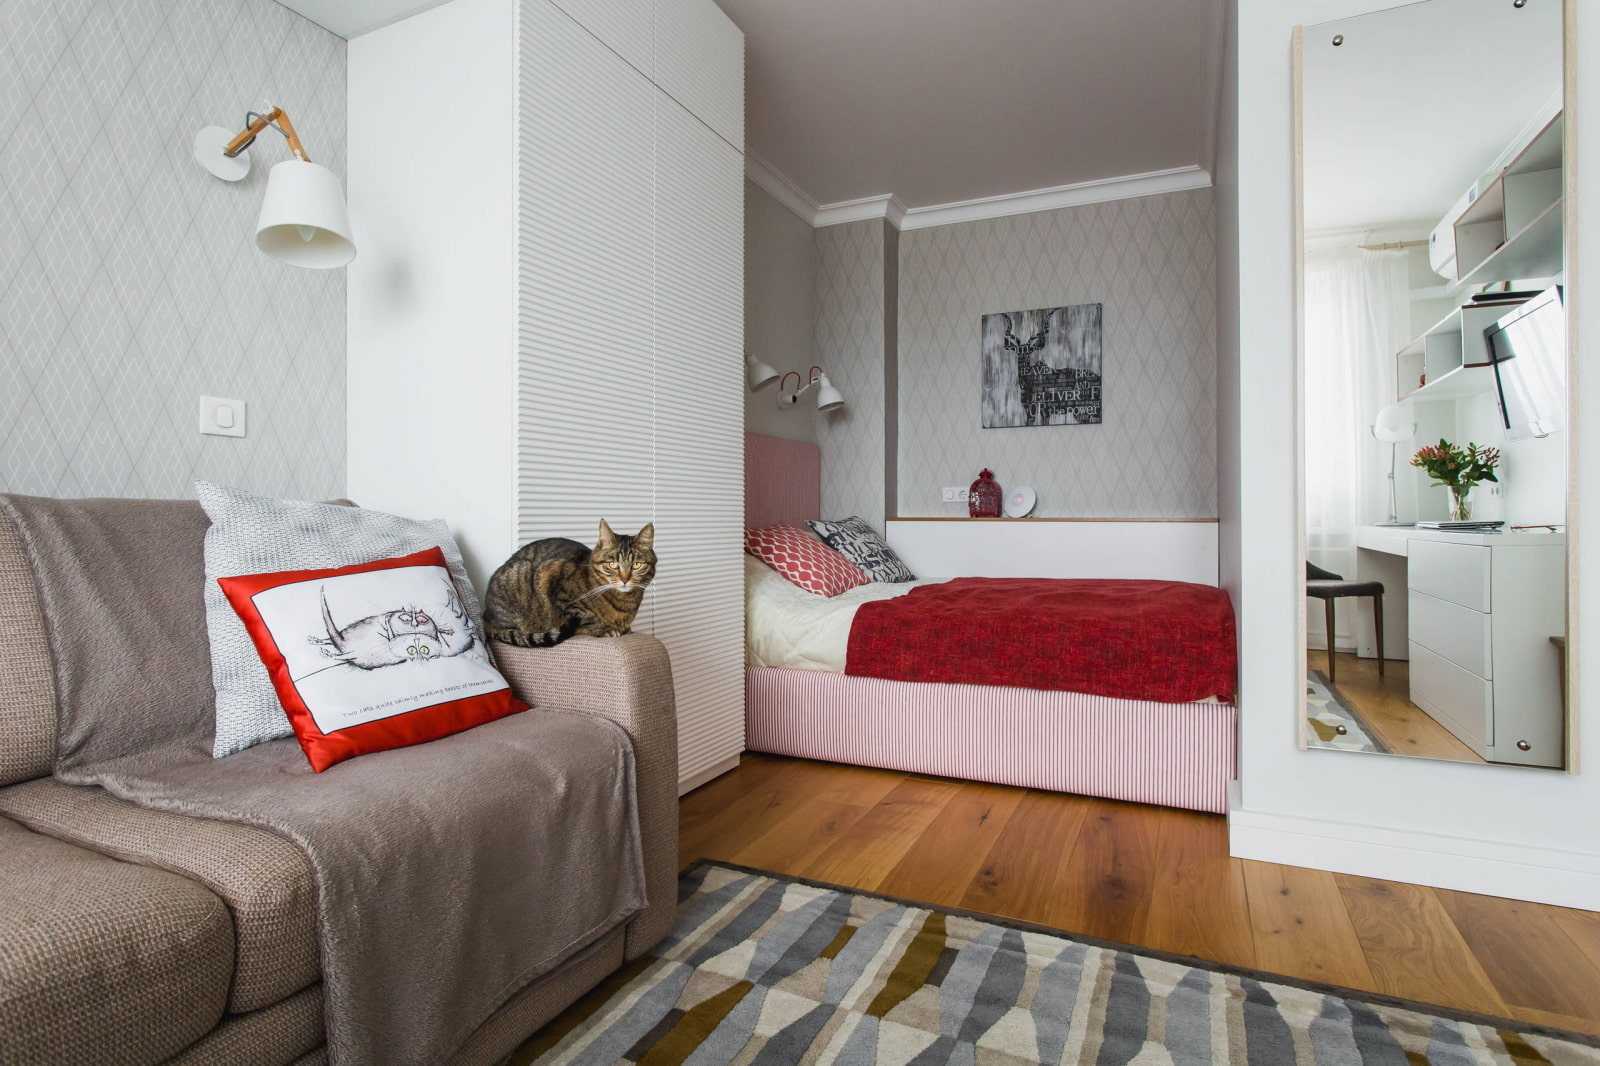 Спальня в однокомнатной квартире дизайн с подиумом и шкафом, кровать в гостиной в нише, зонирование дивана и двуспальной постели в интерьере, как расставить мебель в однушке